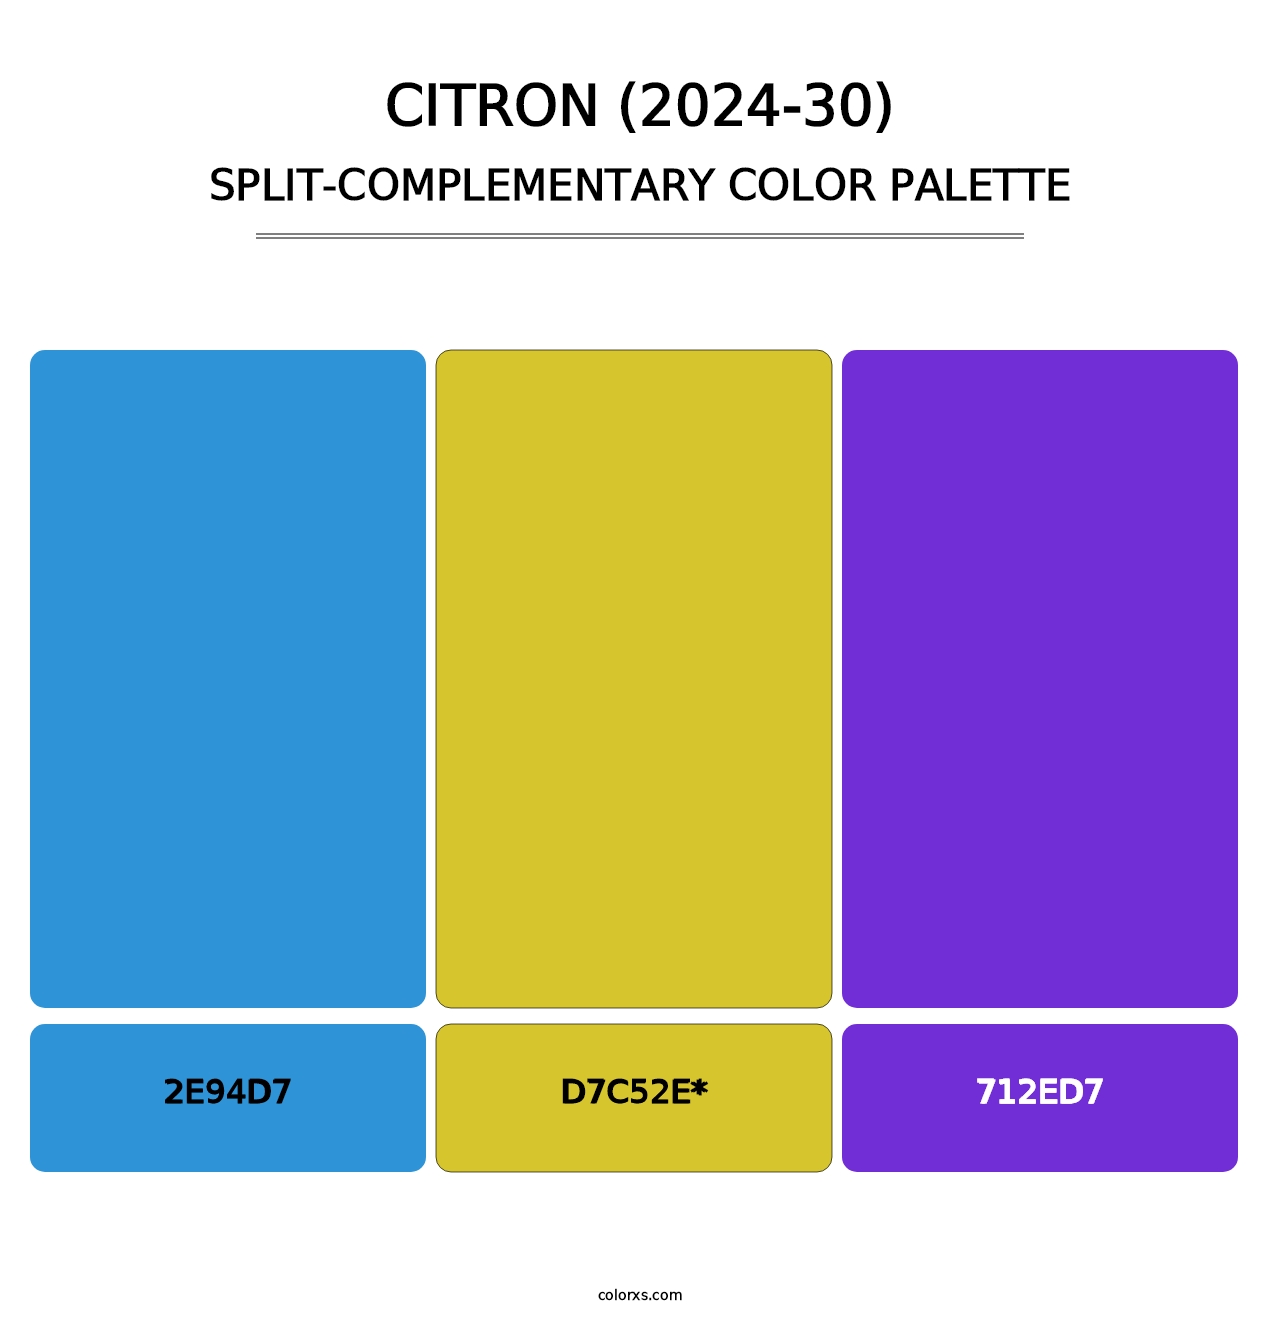 Citron (2024-30) - Split-Complementary Color Palette